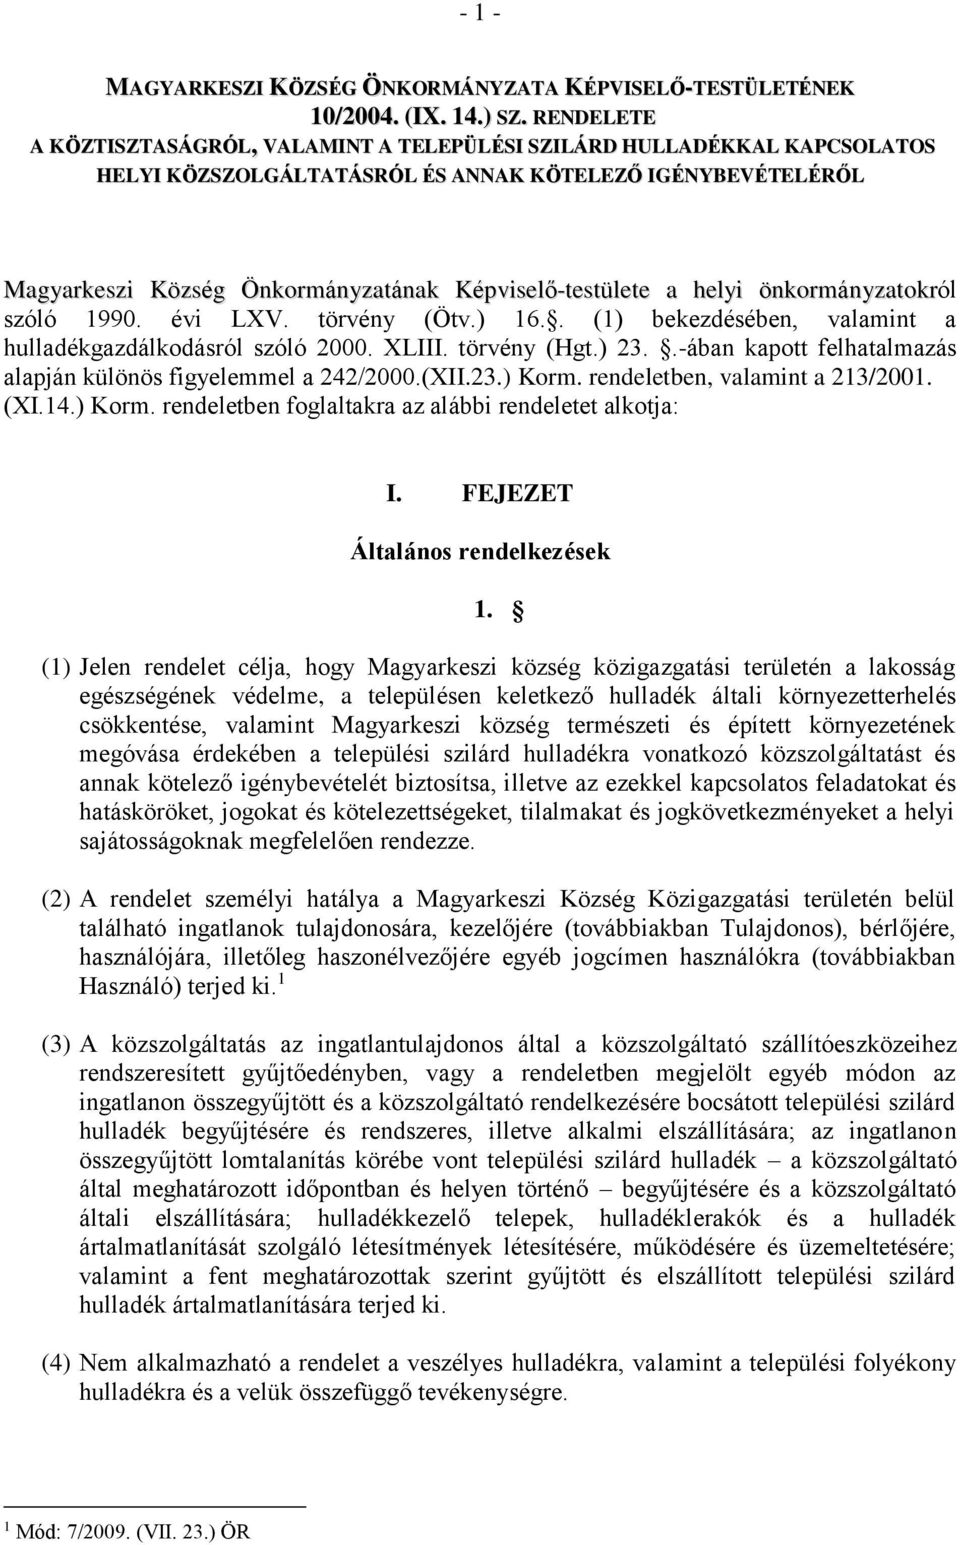 a helyi önkormányzatokról szóló 1990. évi LXV. törvény (Ötv.) 16.. (1) bekezdésében, valamint a hulladékgazdálkodásról szóló 2000. XLIII. törvény (Hgt.) 23.